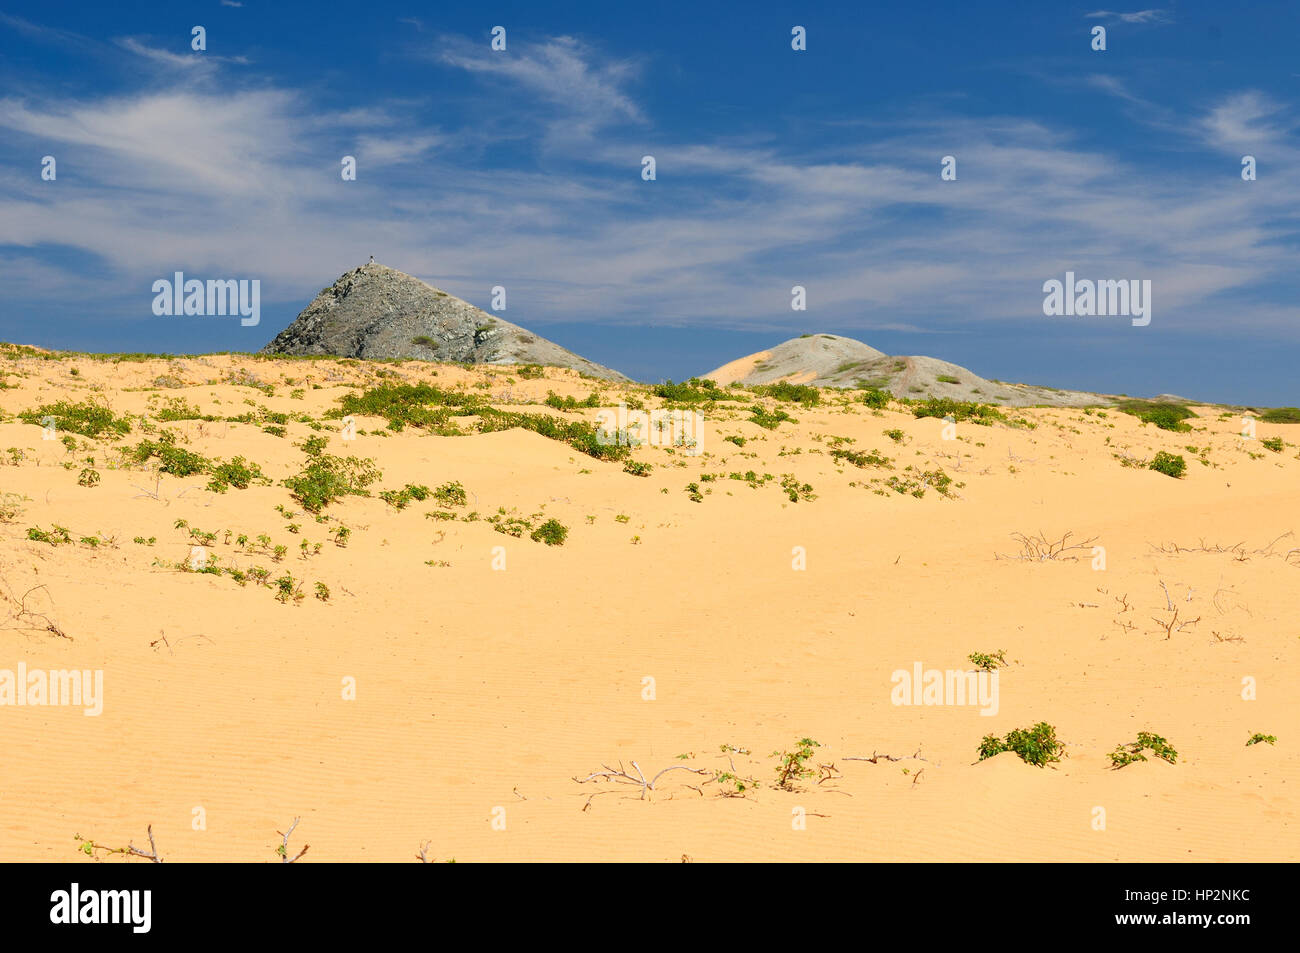 La Colombie, le désert côtier sauvage de la péninsule de Guajira près du Cabo de la Vela resort. Banque D'Images